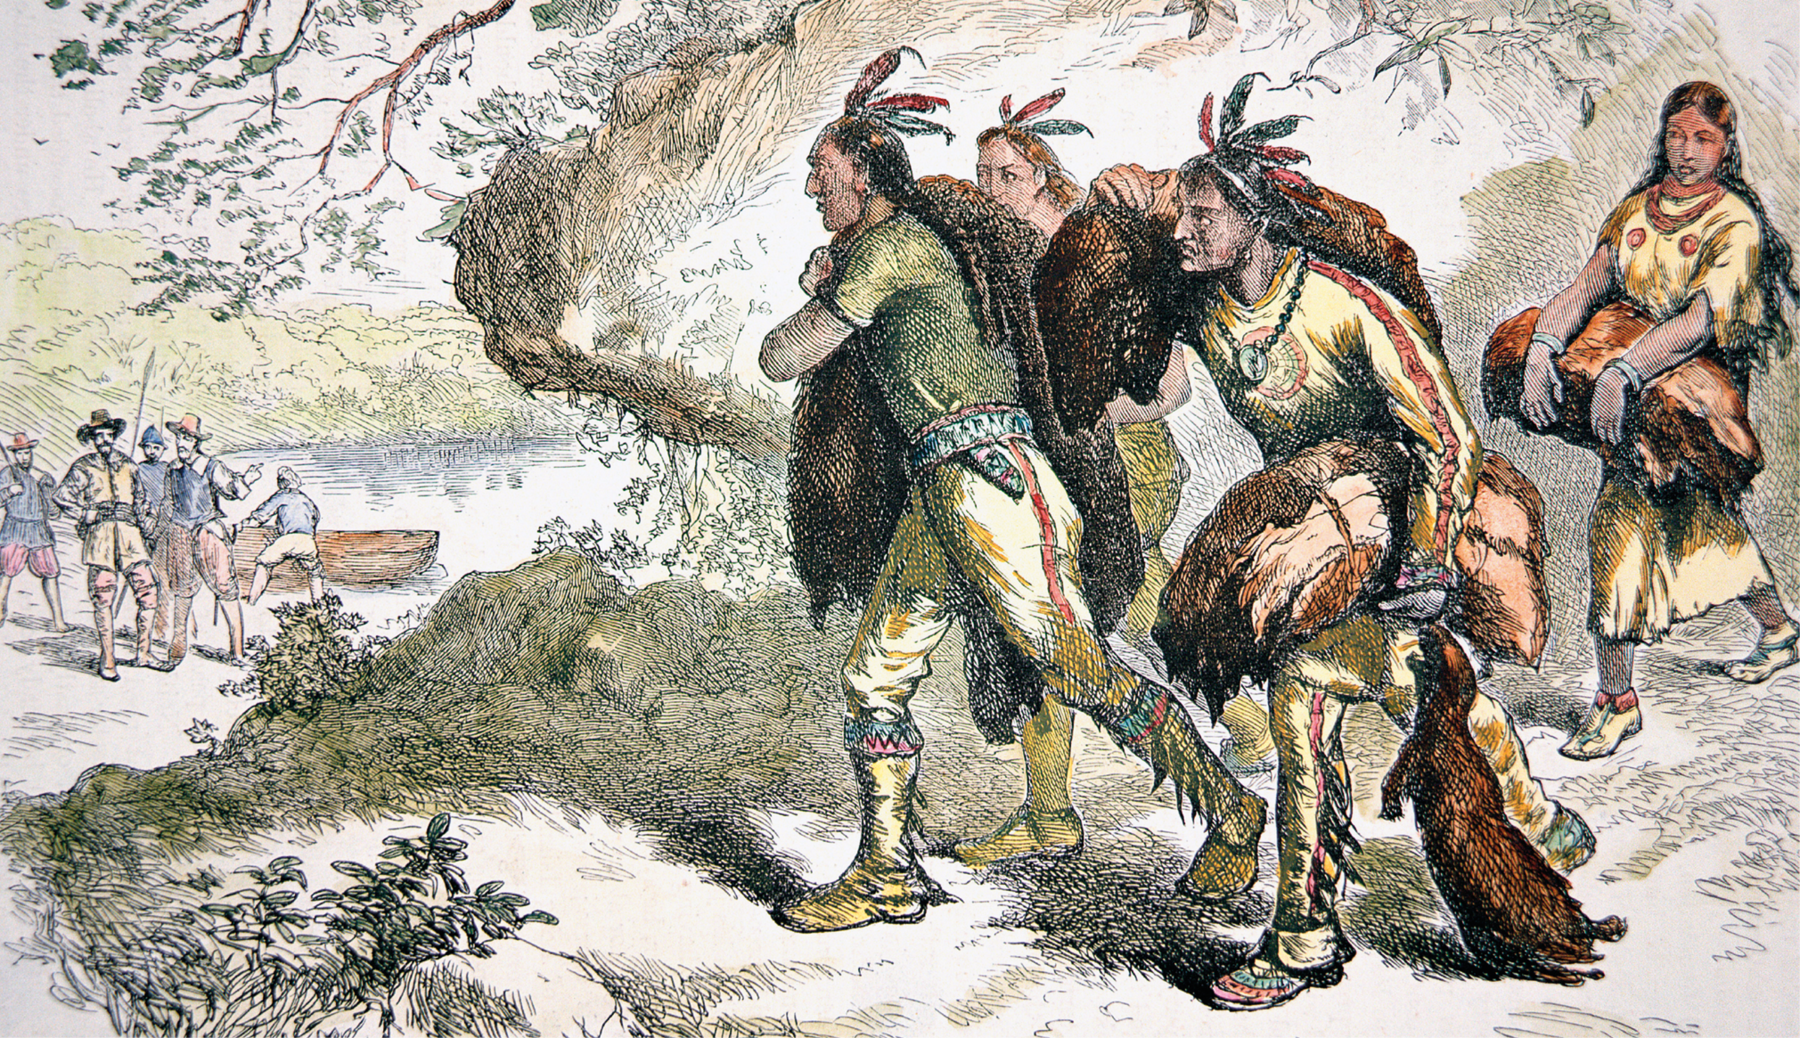 Gravura. Indígenas norte-americanos vestindo calça comprida, botas e camisa. Carregam fardos de peles de animais. Ao fundo, atrás das árvores, colonos de chapéu estão perto de uma canoa. Ao fundo, um rio.